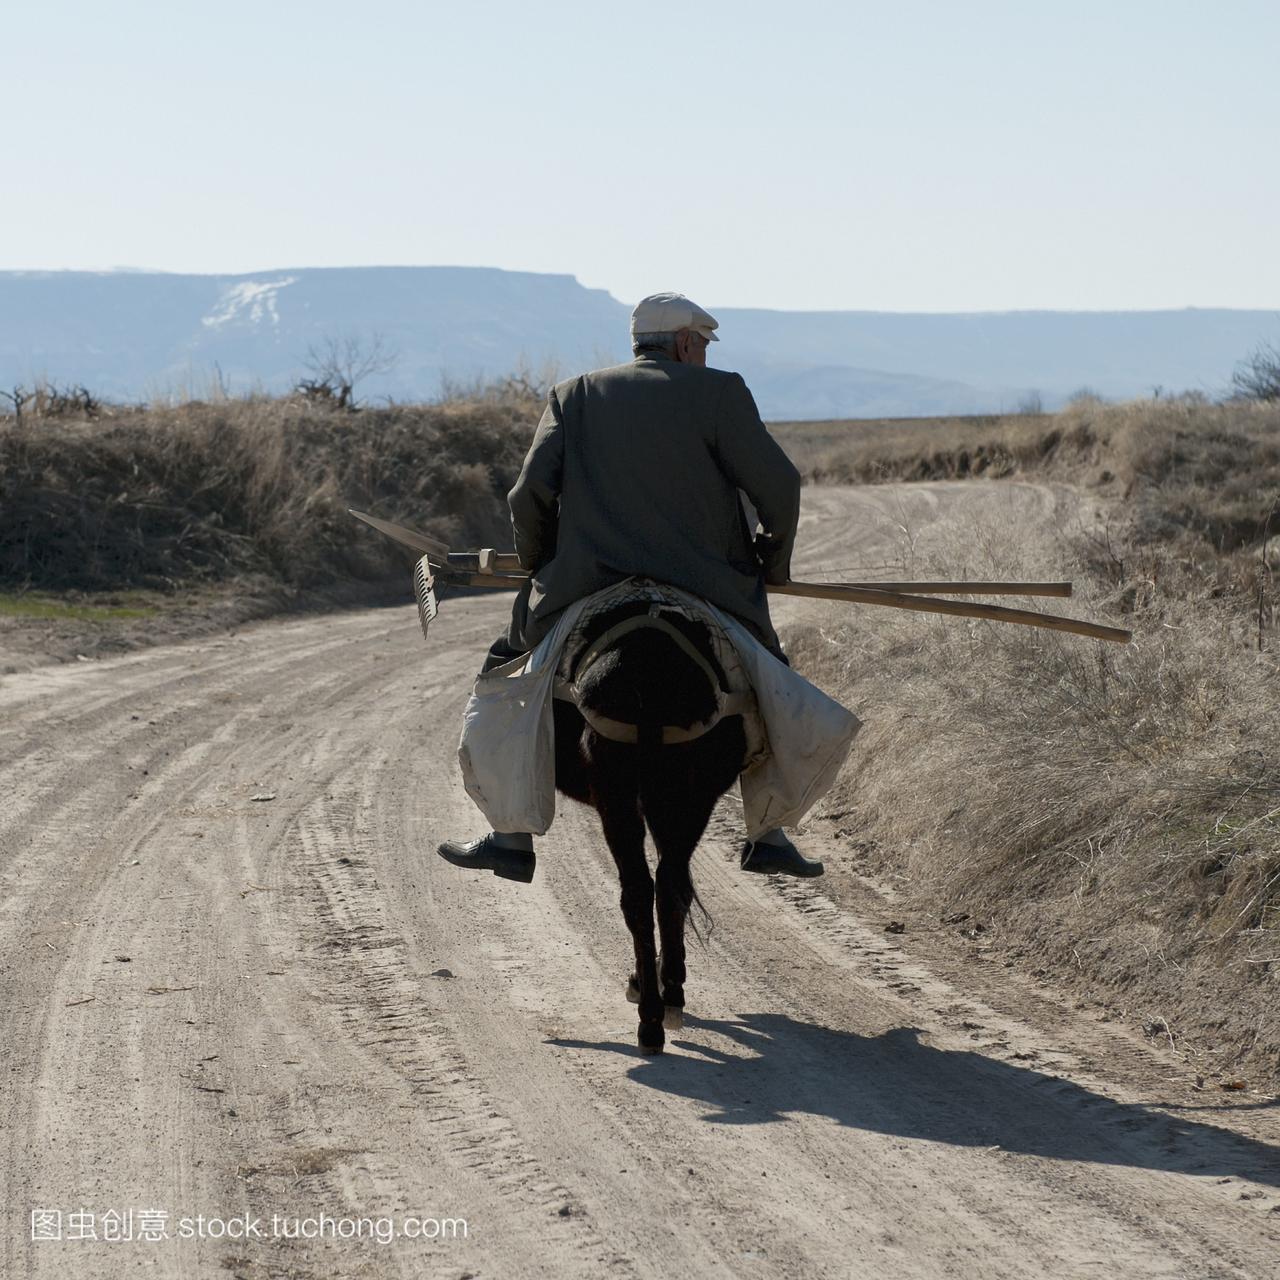 一个人骑着马沿着一条土路,带着园艺工具;orta